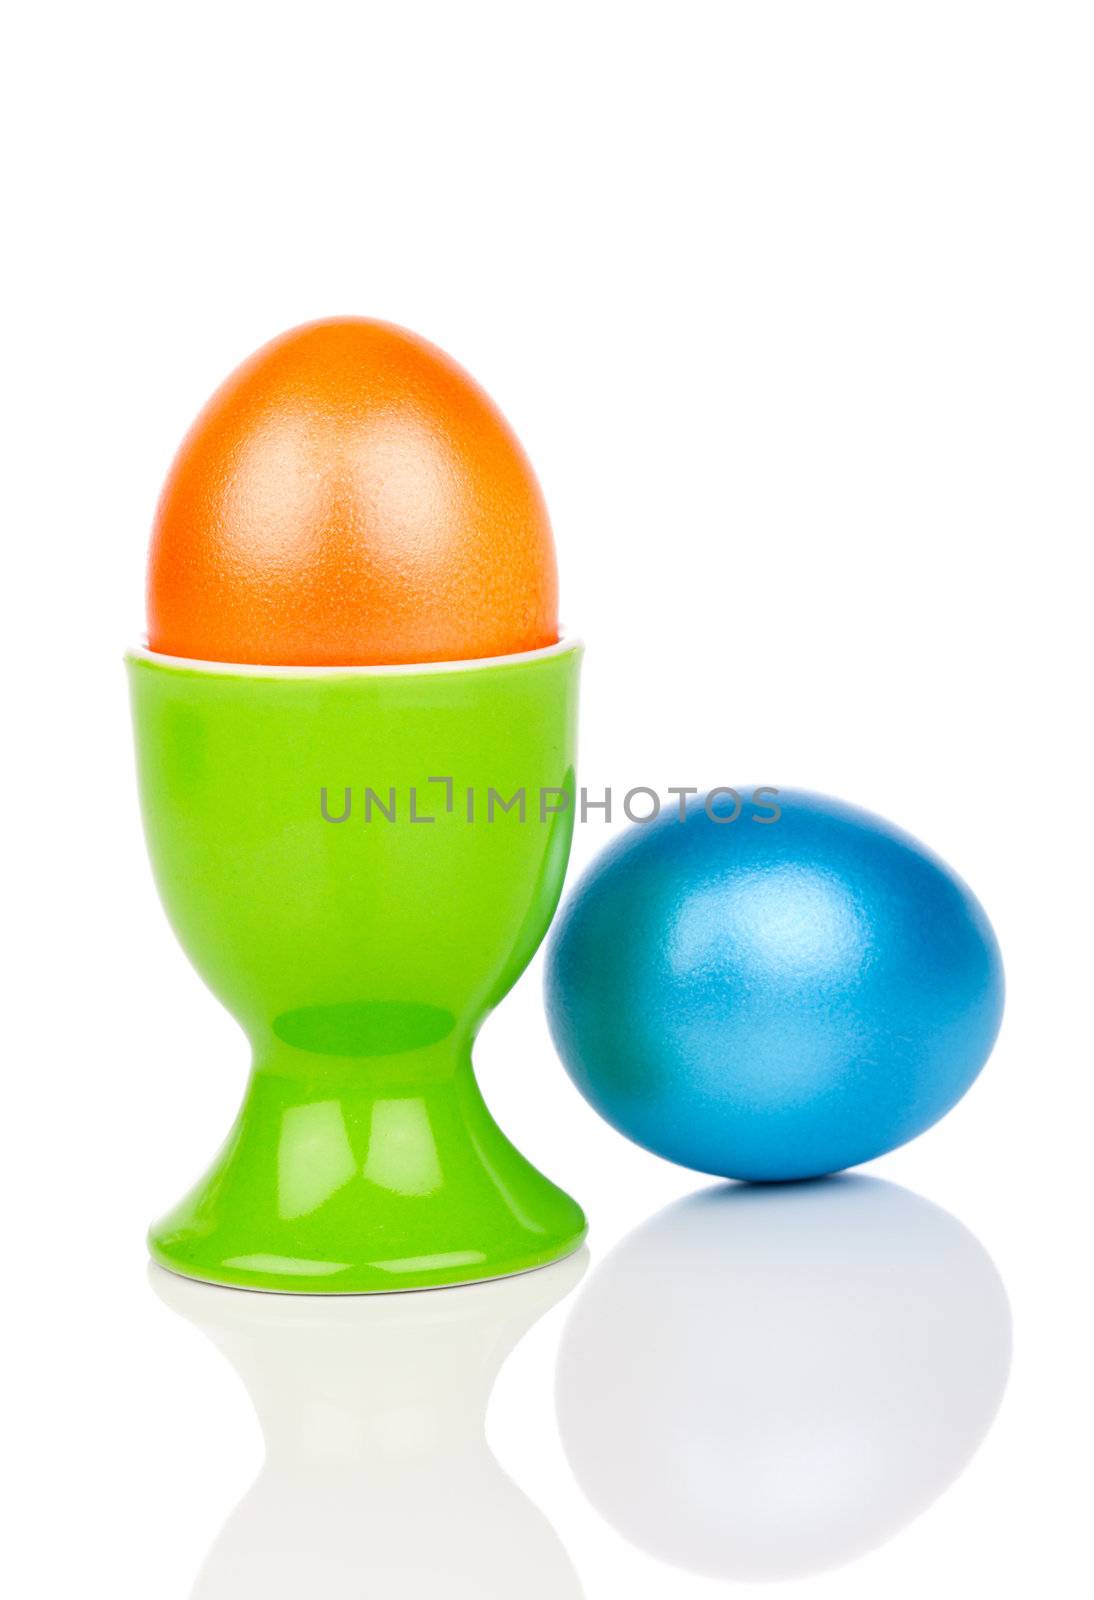 Colorful Easter Eggs by motorolka